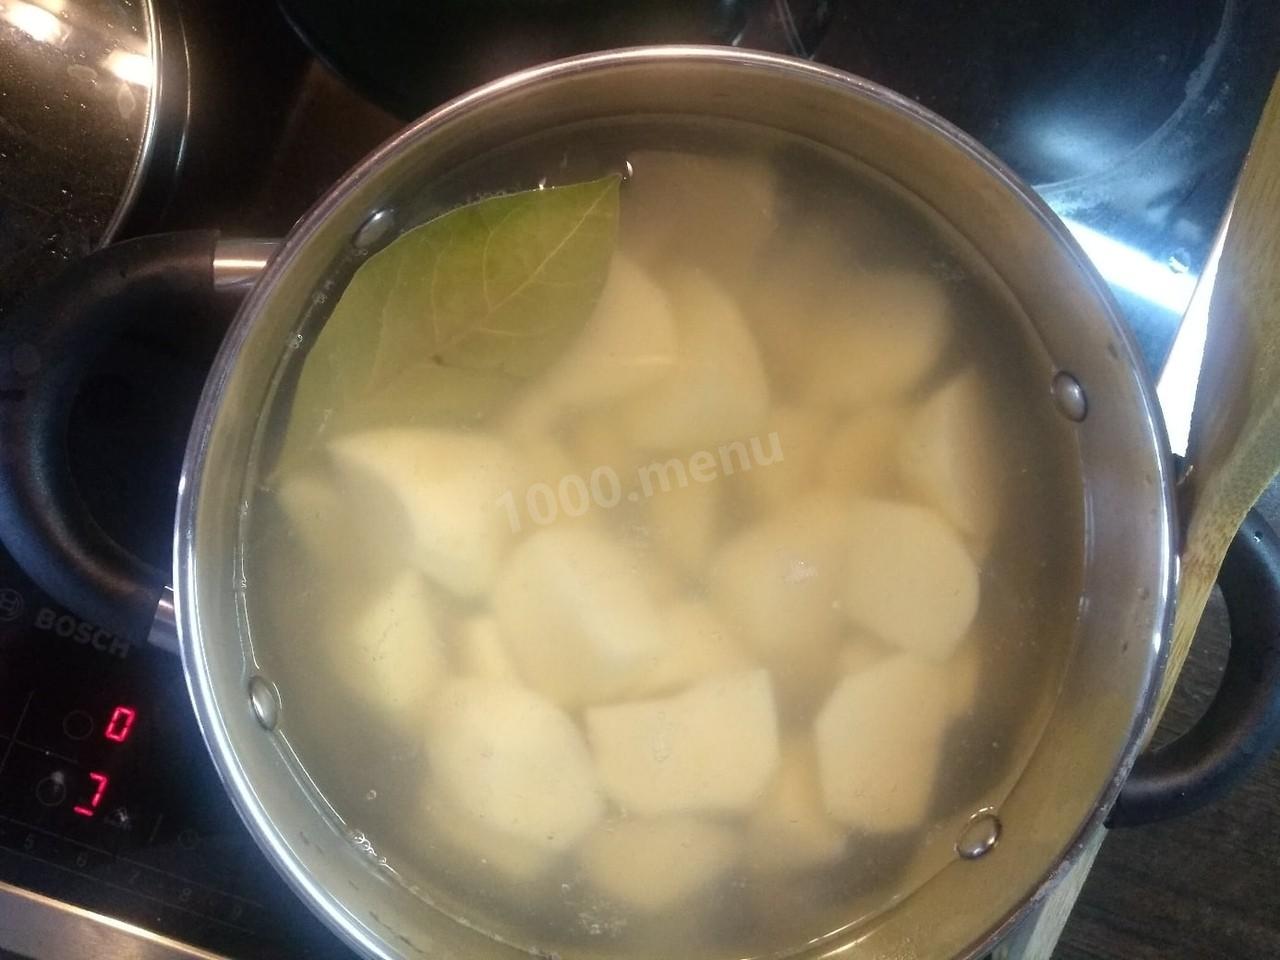 Лаврушку запекают в картошке. Как закипает вода с картошкой. Картофель бросить в кипящую воду. Горячая вода с картошкой как парить. Картошку в холодную или кипящую воду